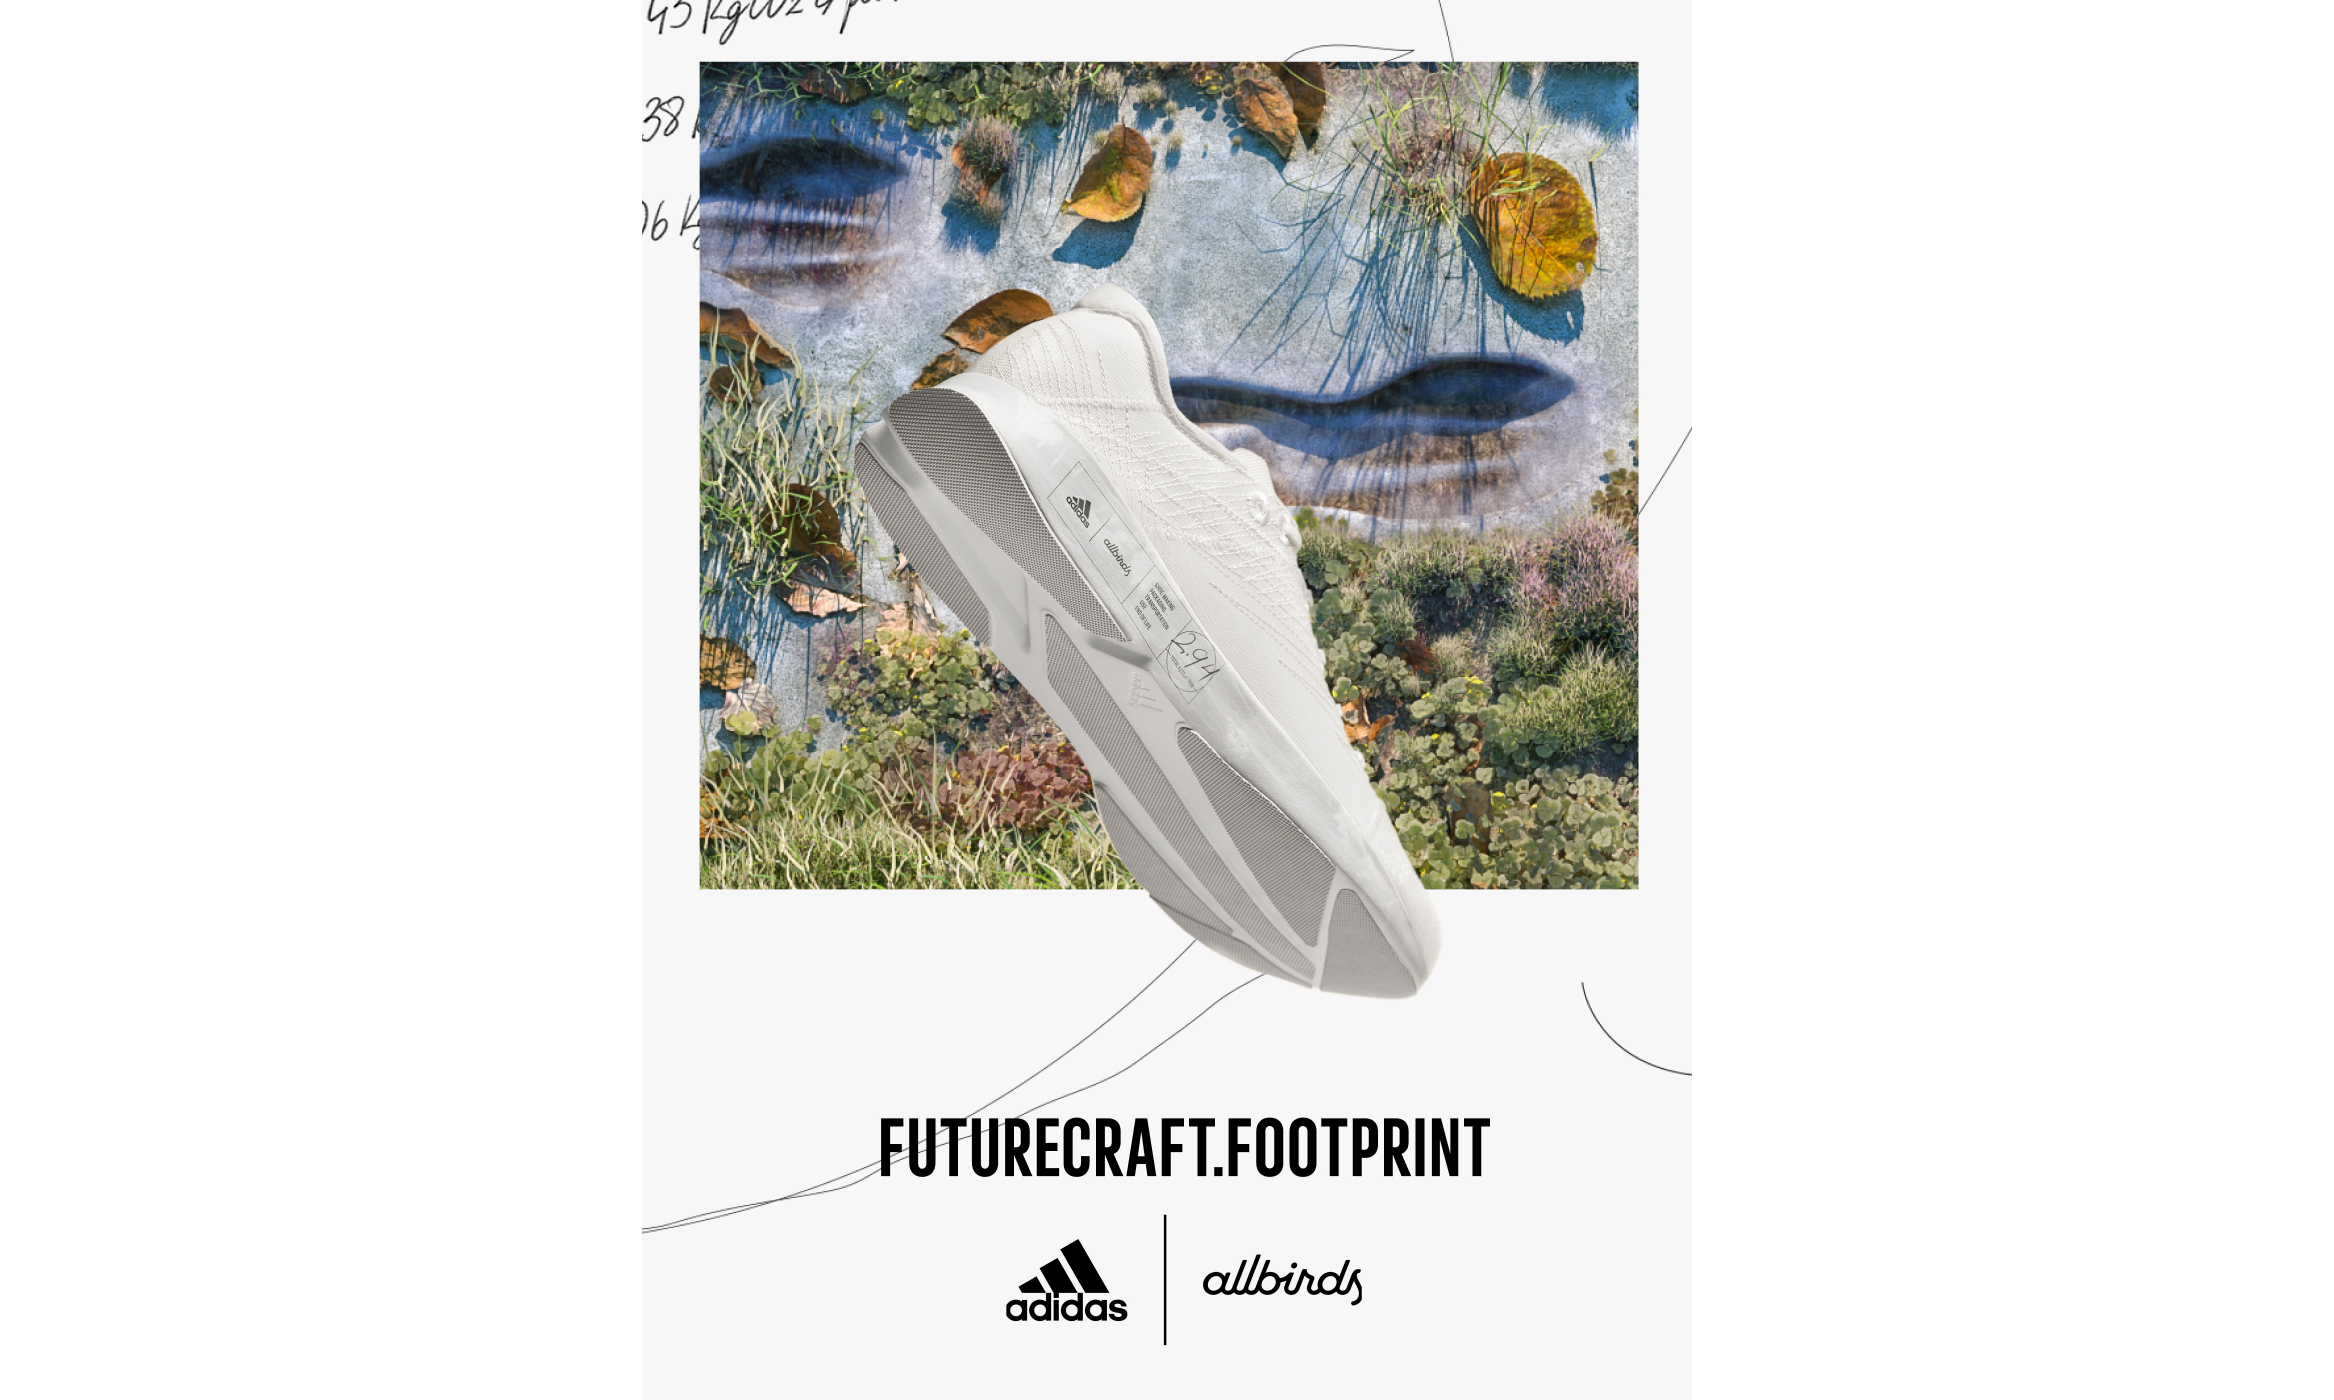 领先力推动低碳发展，adidas 携手 Allbirds 呈现 FUTURECRAFT.FOOTPRINT 跑鞋